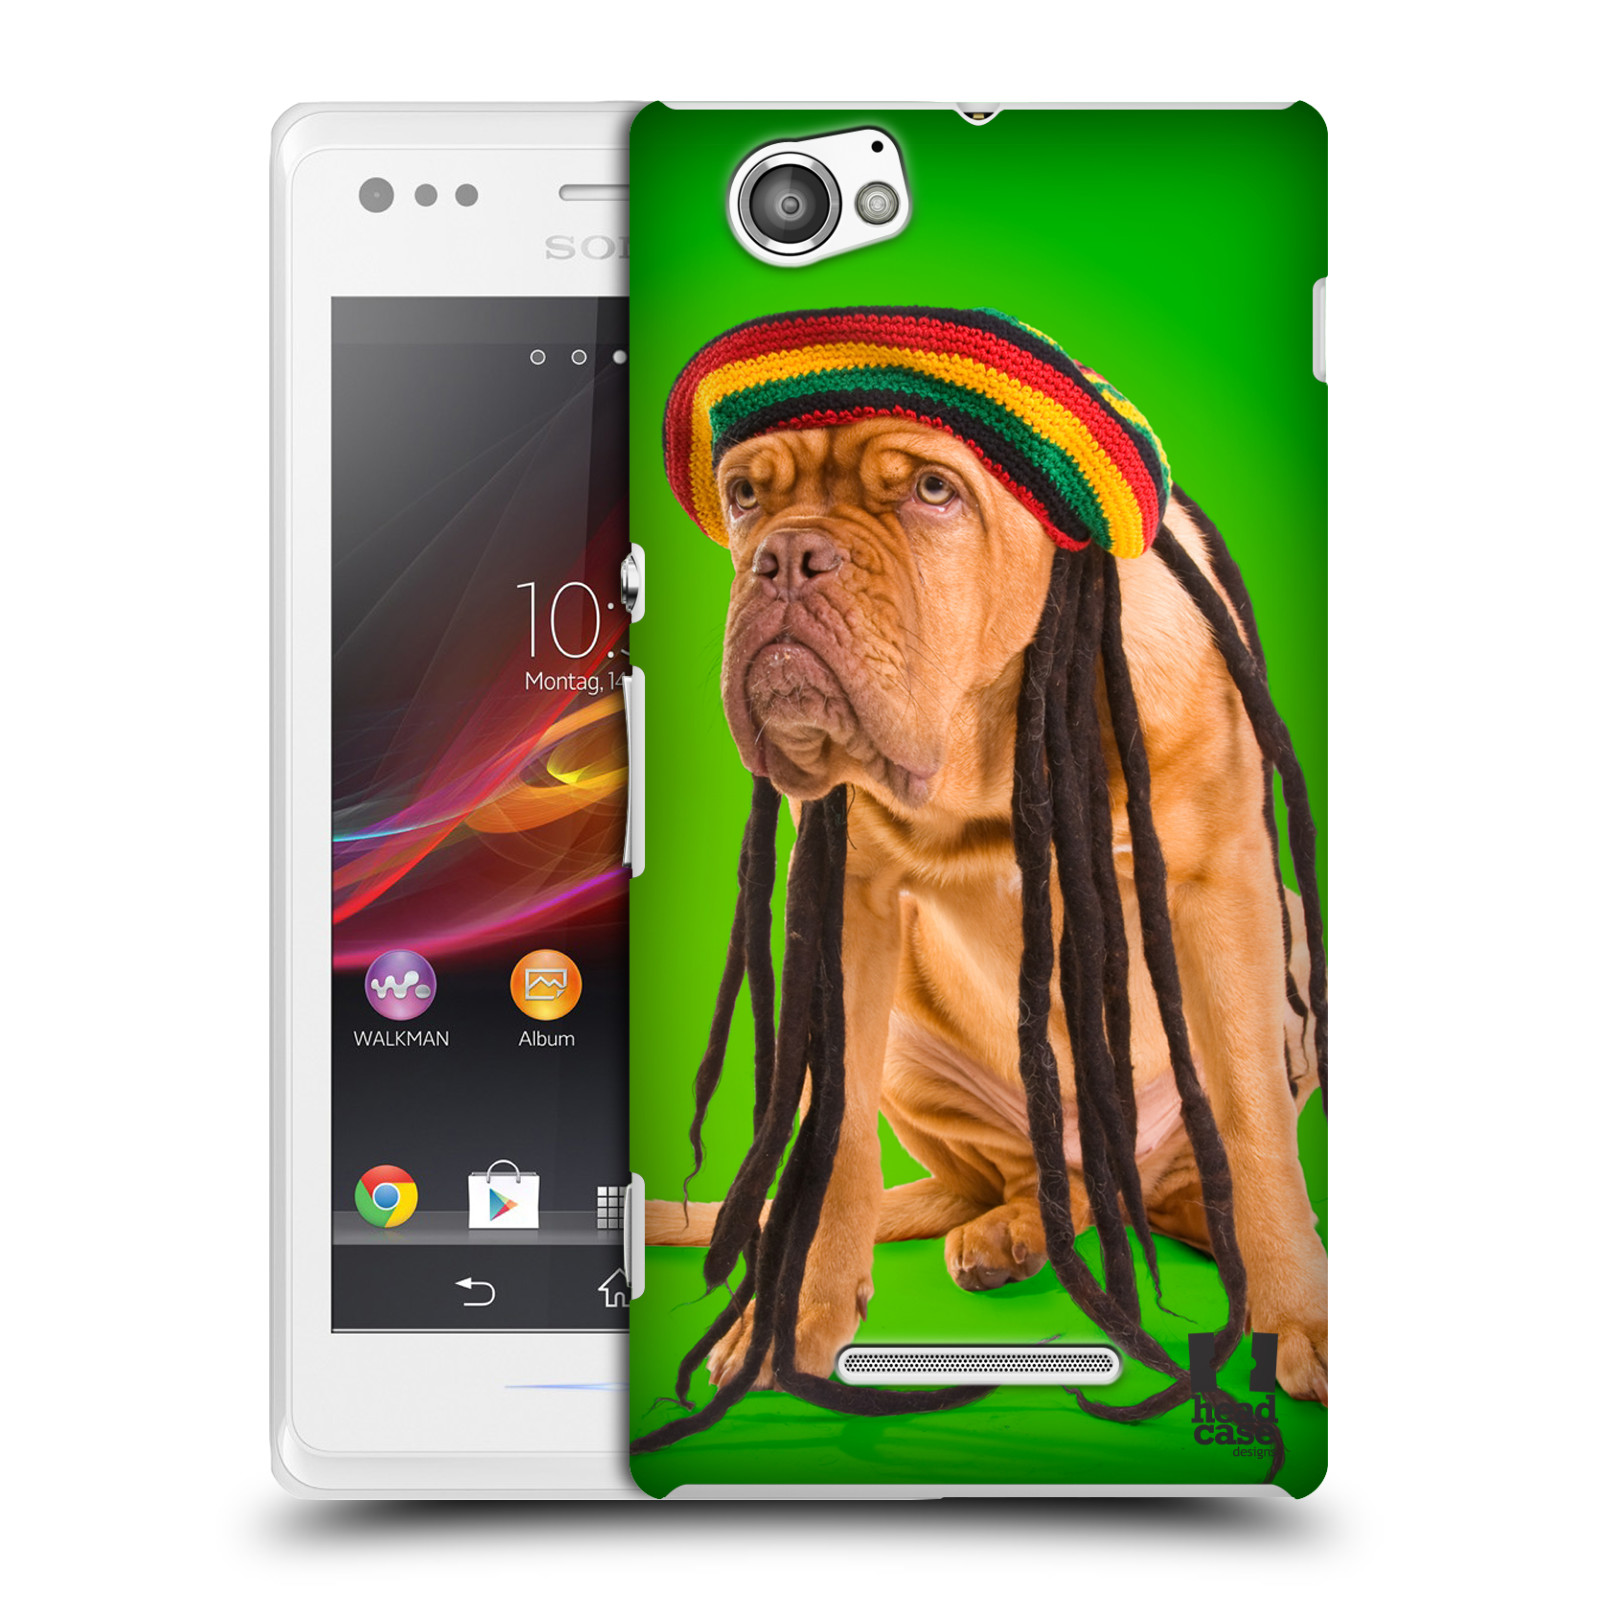 HEAD CASE plastový obal na mobil Sony Xperia M vzor Legrační zvířátka pejsek dredy Rastafarián